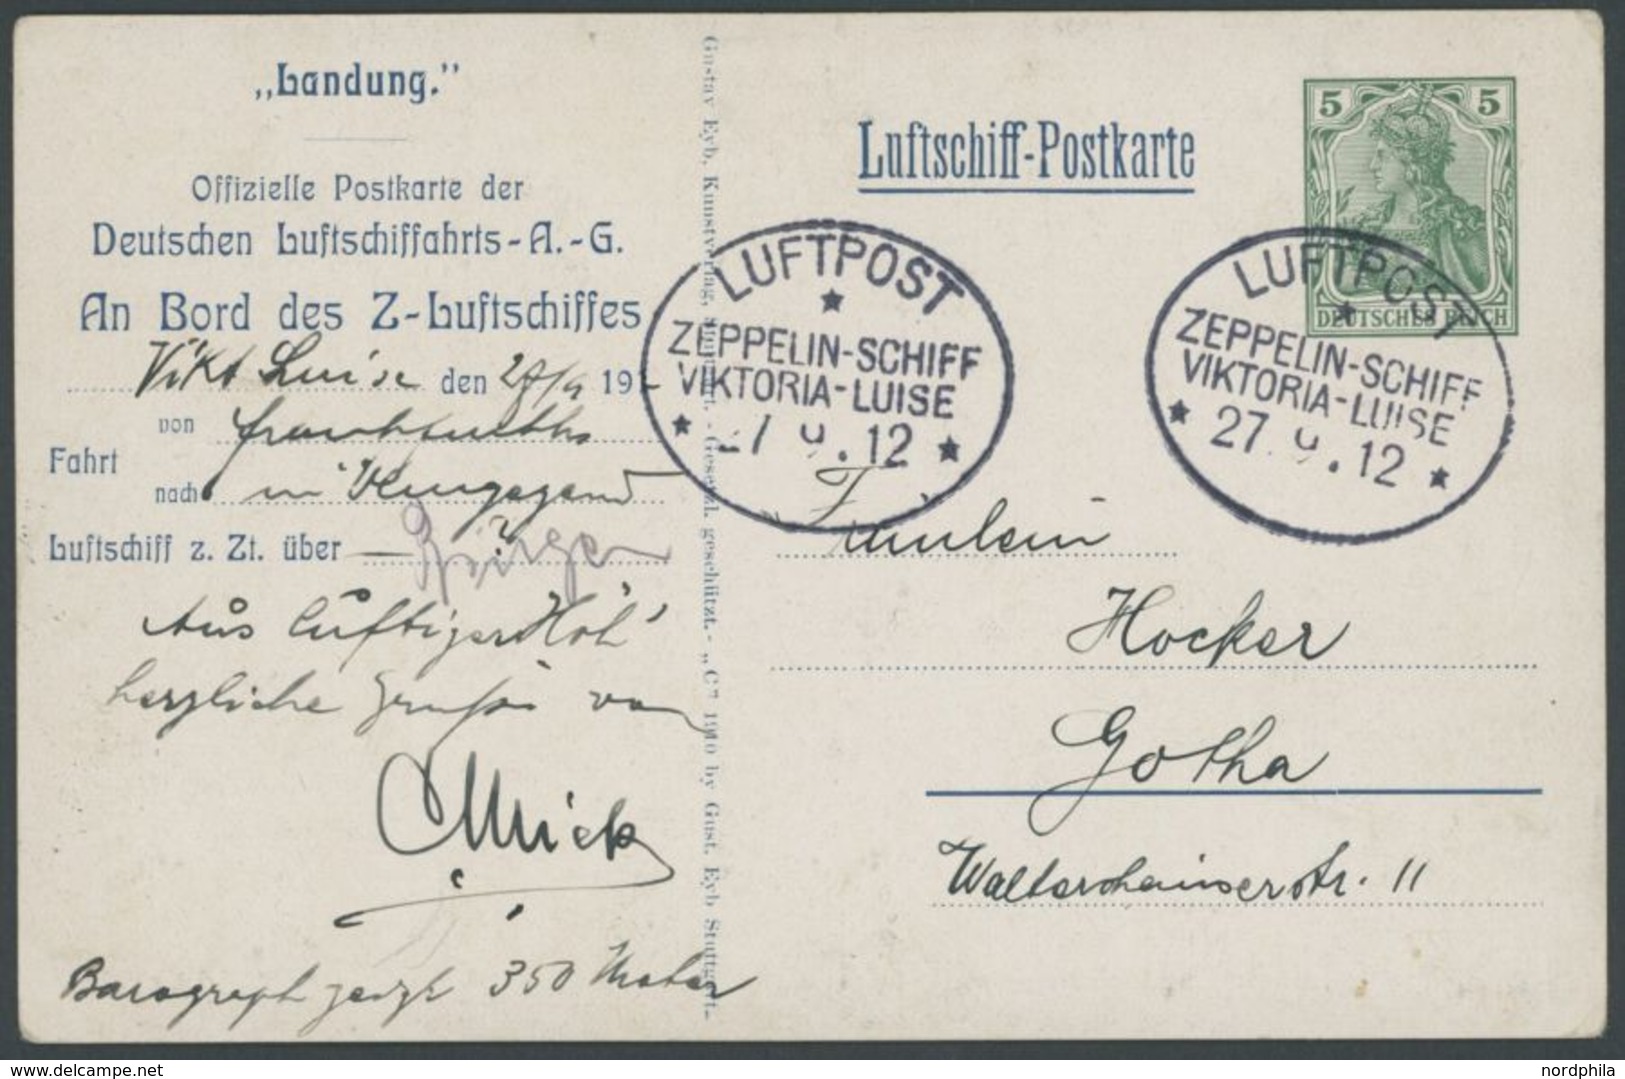 27.9.1912, Luftschiff Viktoria-Luise, Frankfurt-Rundfahrt Dokumentation Mit Original Luftschiff Postkarte Eines Passagie - Airmail & Zeppelin